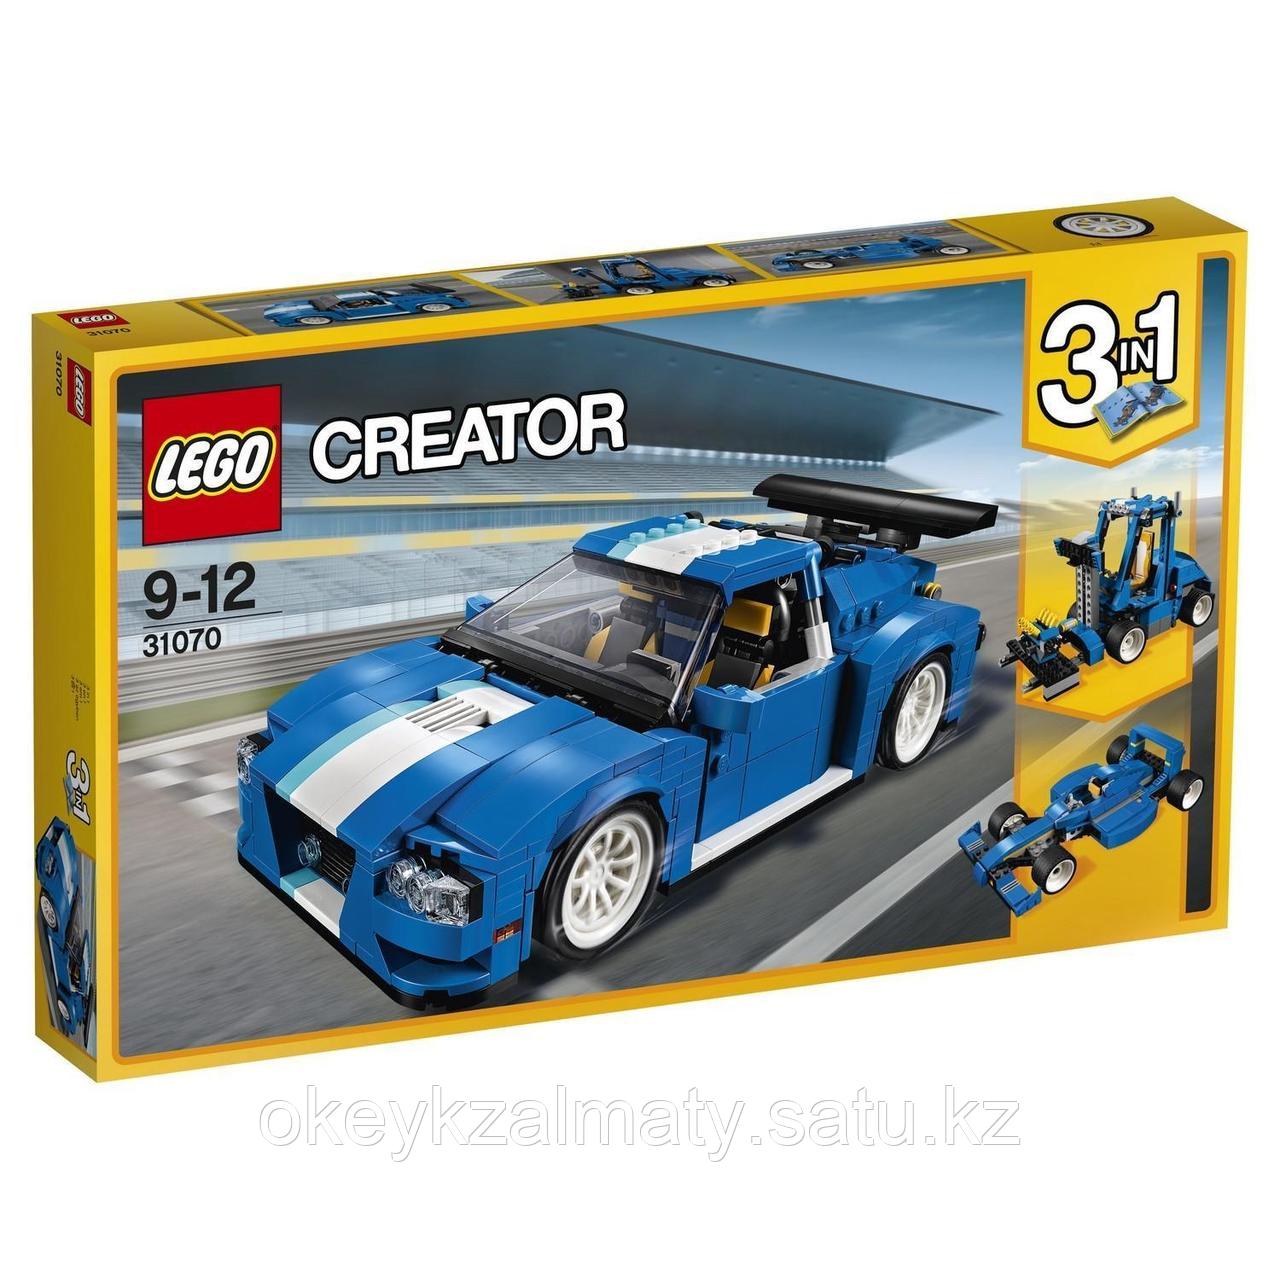 LEGO Creator: Гоночный автомобиль 31070